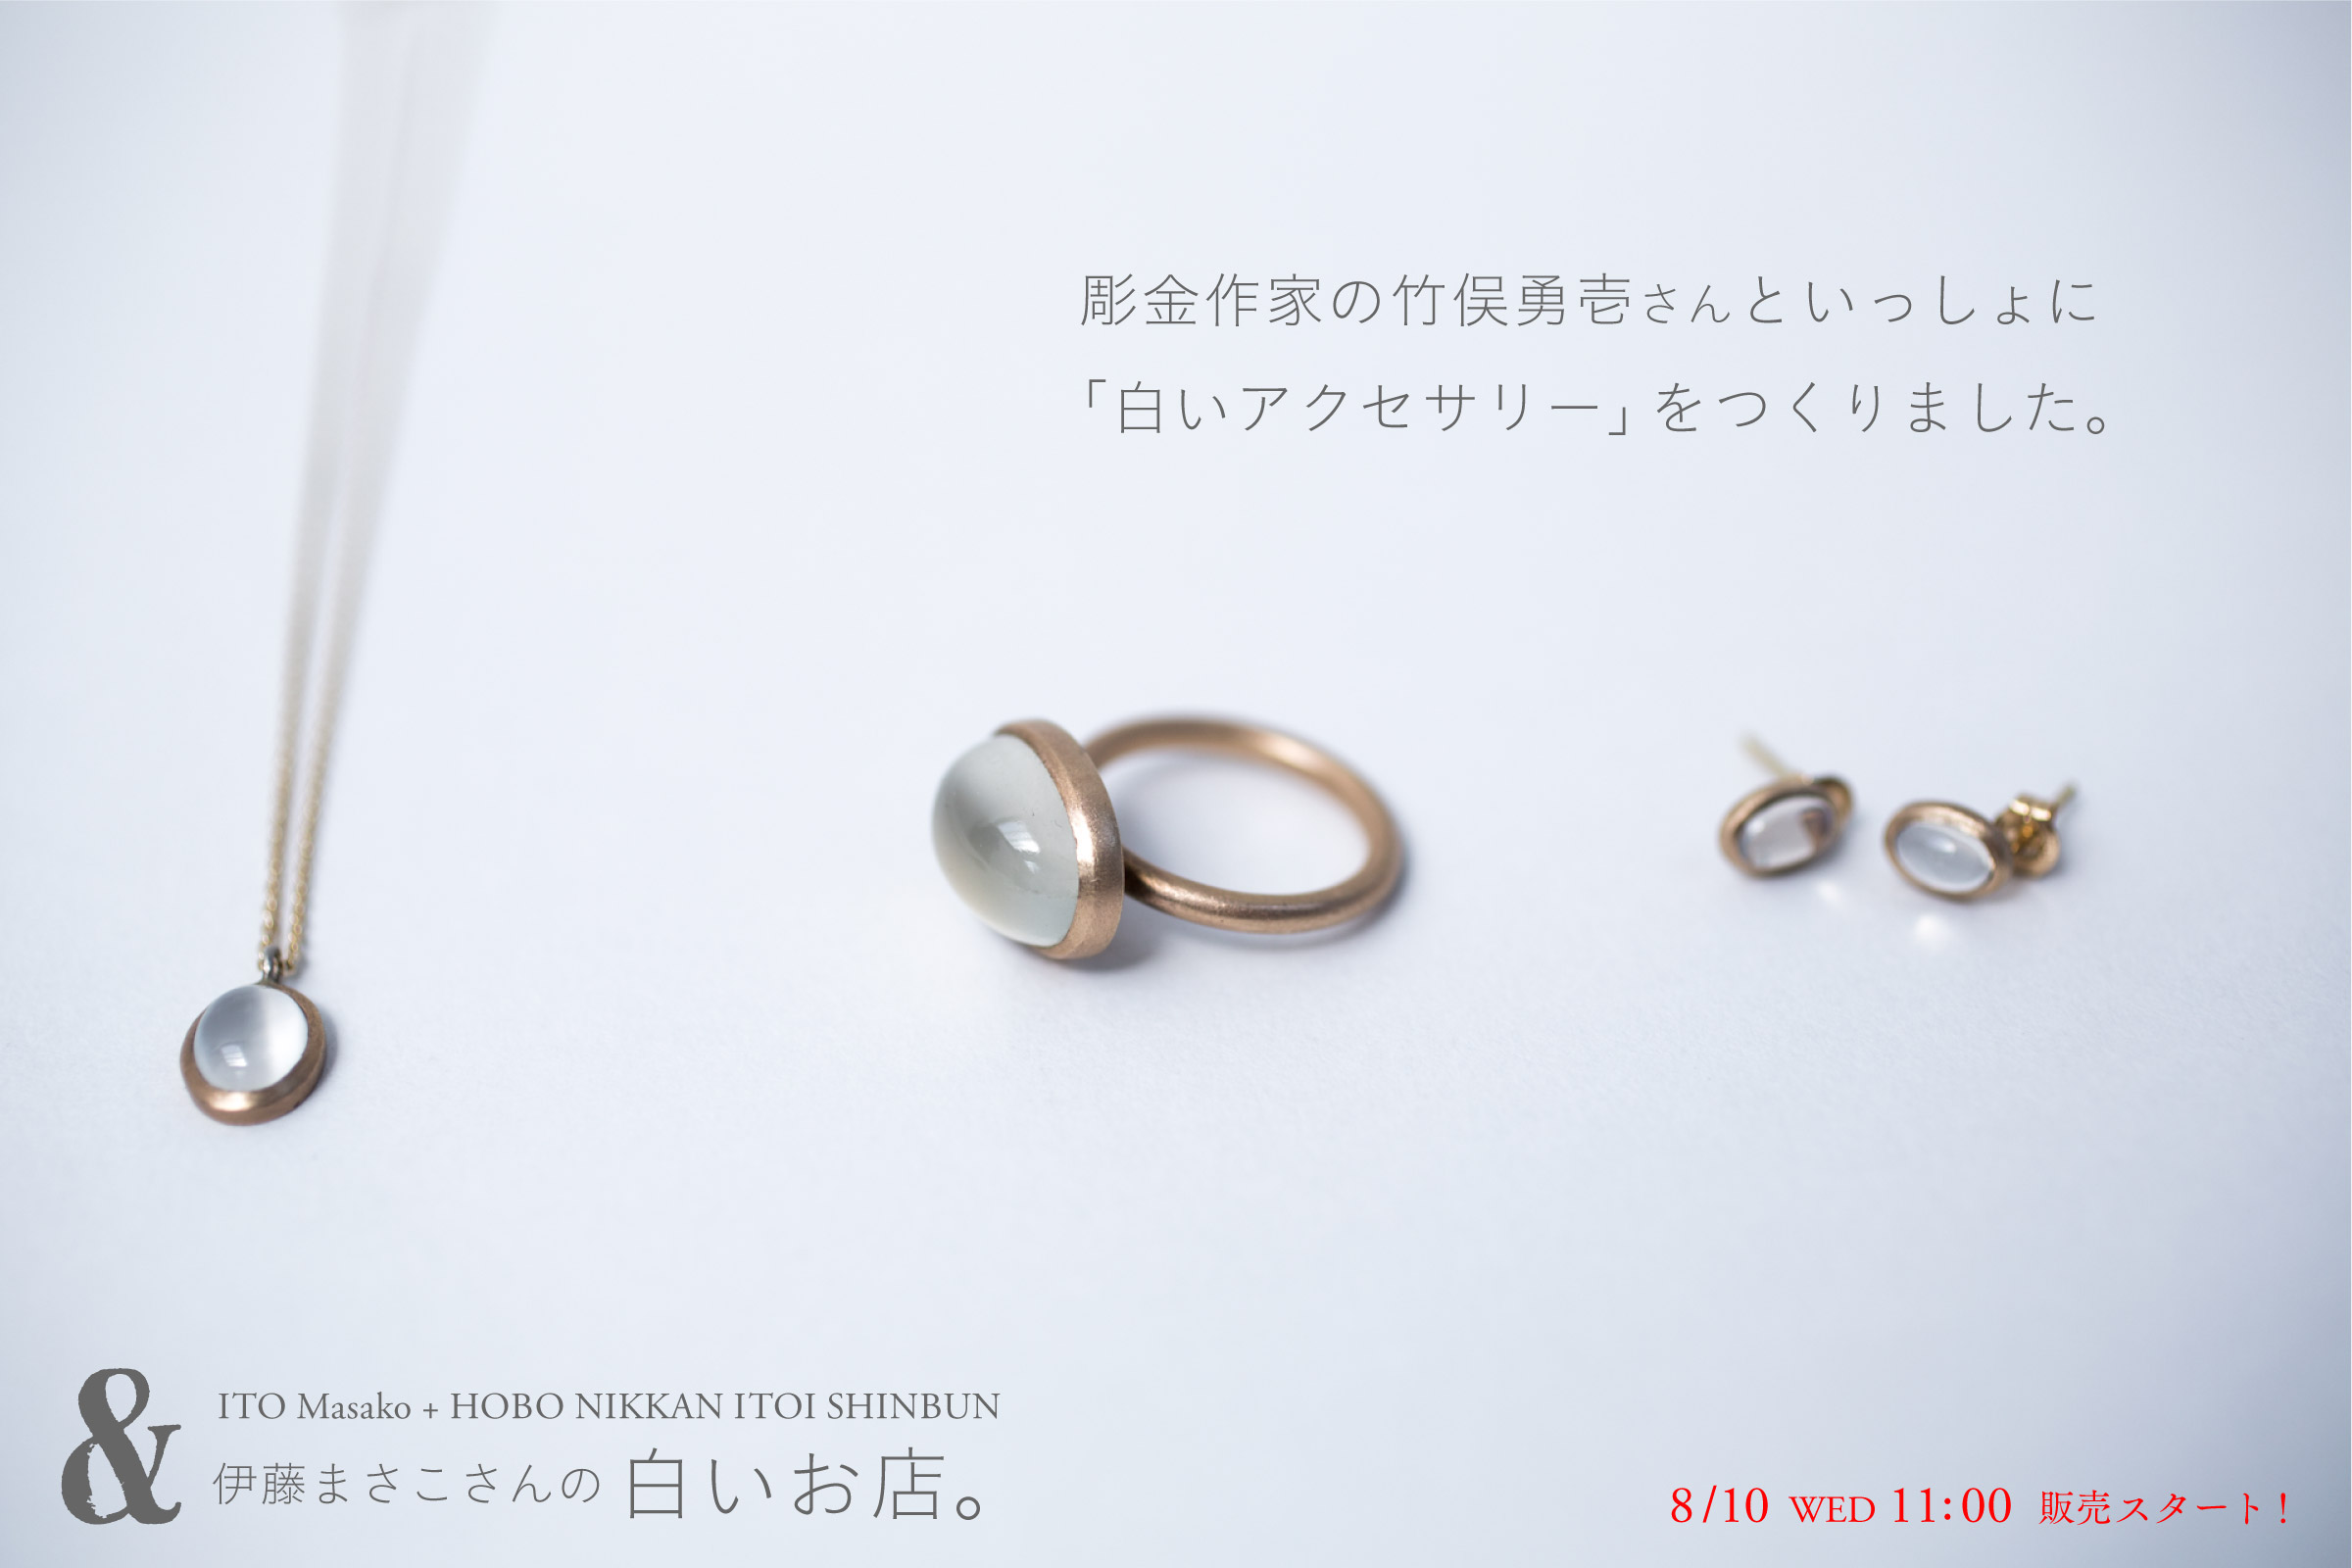 伊藤まさこさんの「白いお店。」

彫金作家の
竹俣勇壱さんといっしょに
「白いアクセサリー」を
つくりました。